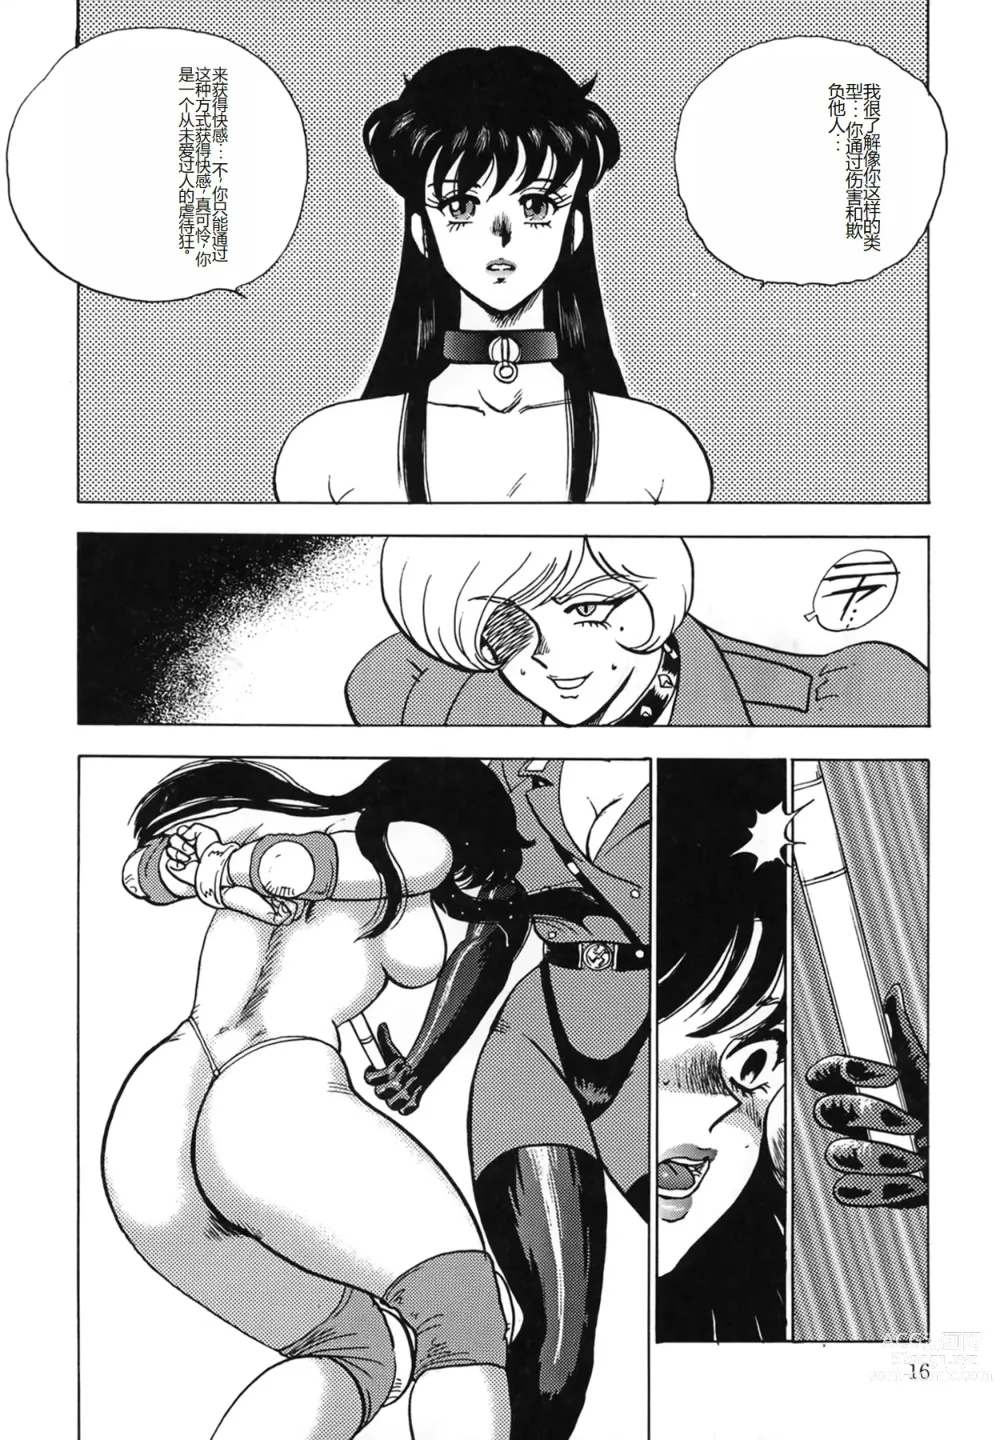 Page 16 of manga Inbi Teikoku